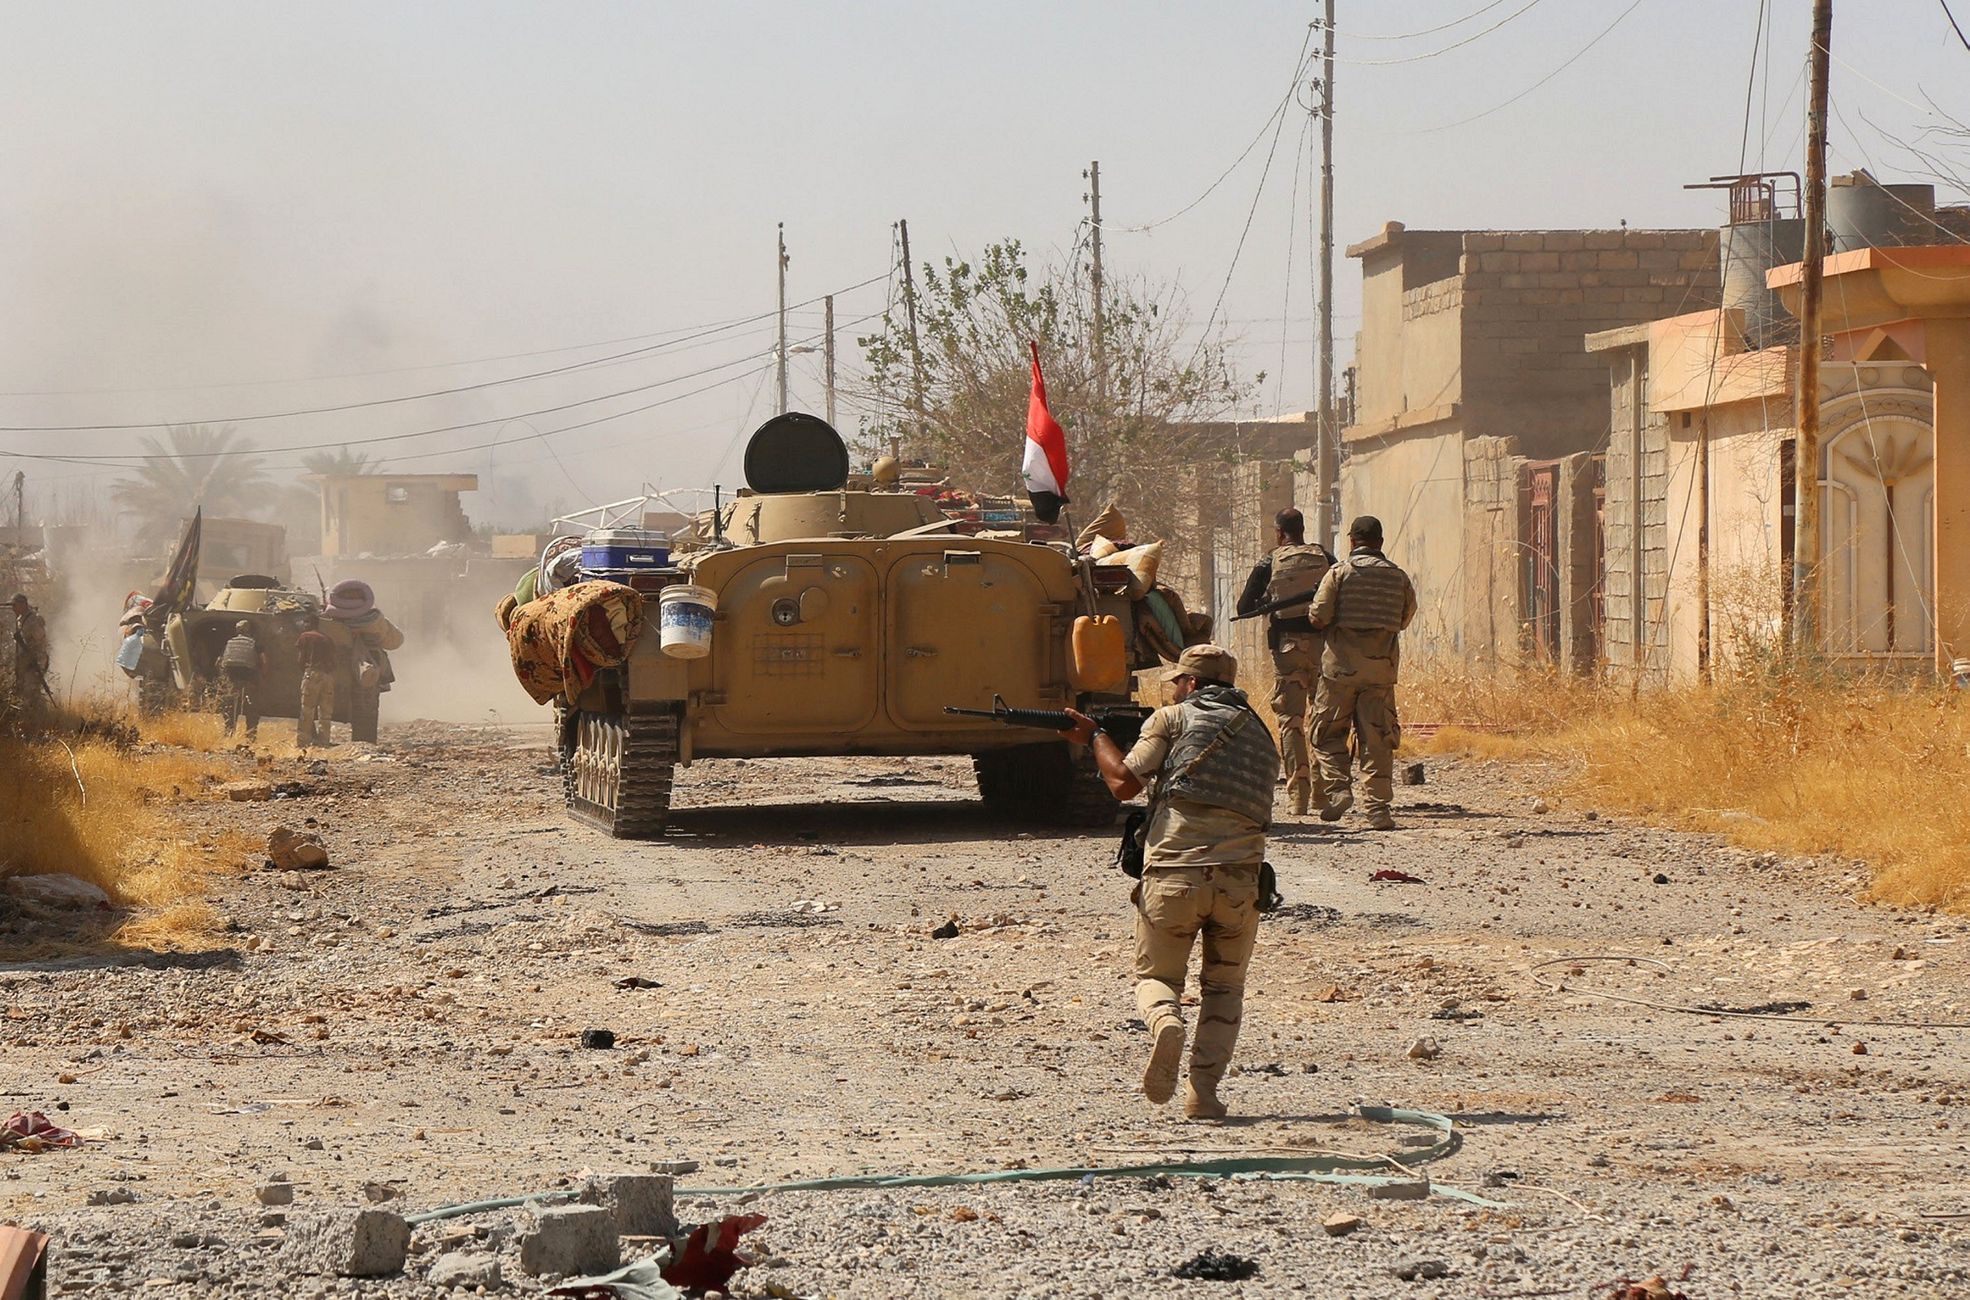 irácké jednotky dobyly město Tall Afar